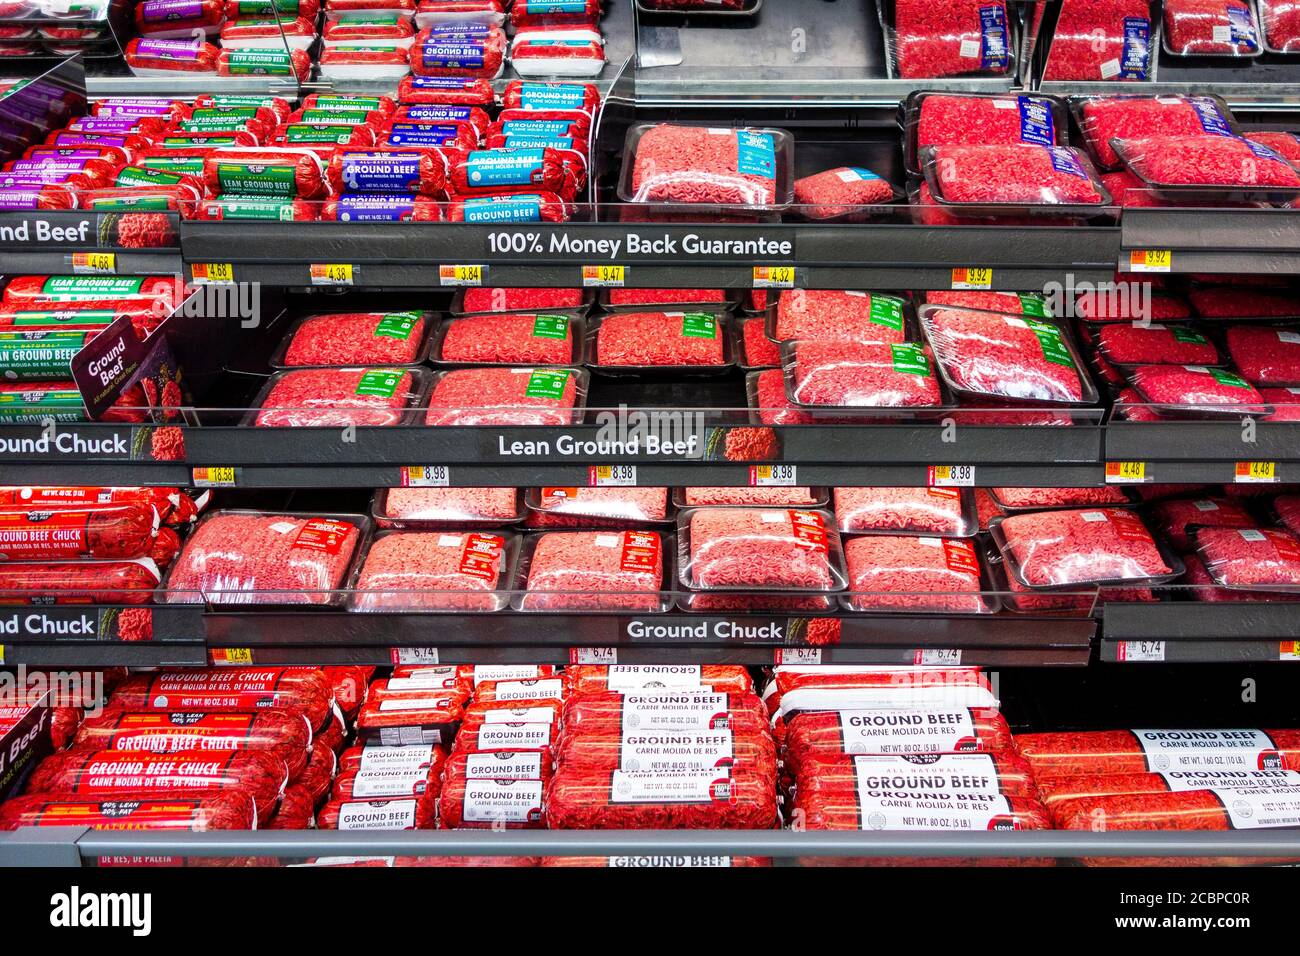 Volle Regale bei Walmart, Supermarkt, in Schrumpffolie verpacktes Hackfleisch, verschiedene Arten, Nevada, USA Stockfoto